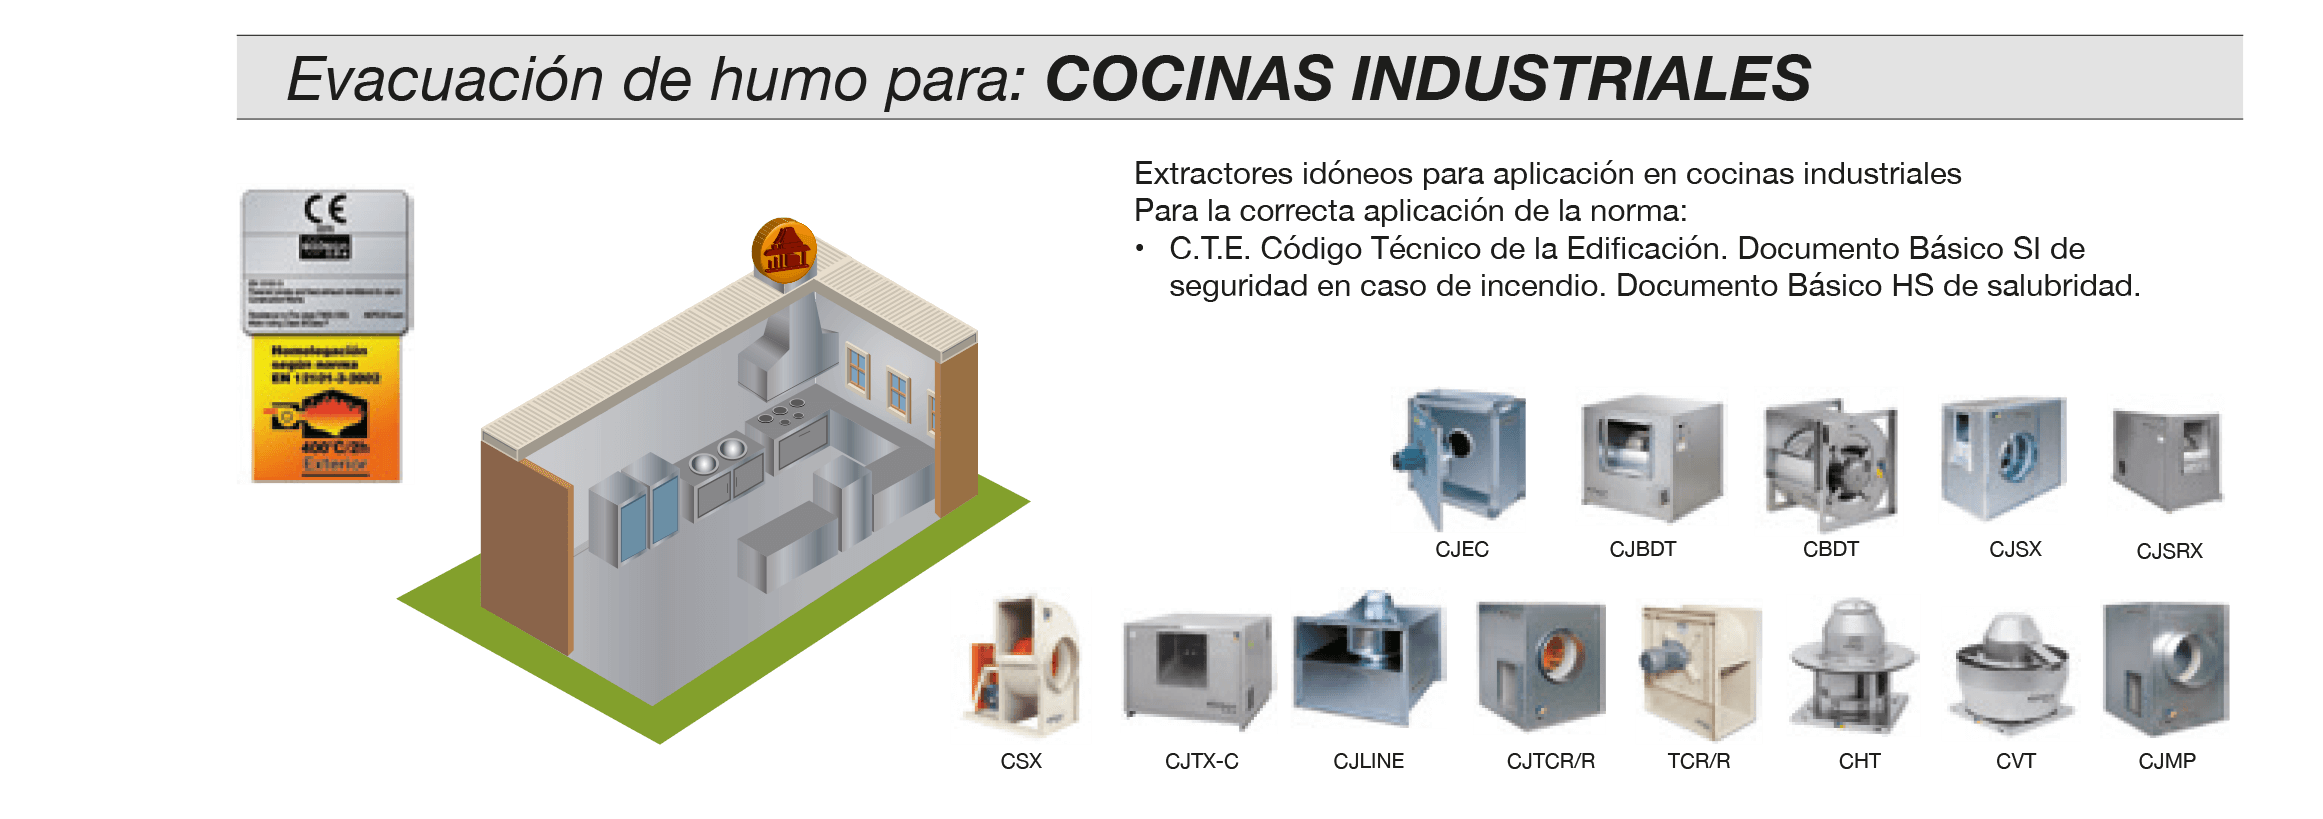 tipos_extraccion-humo-cocinas-industriales